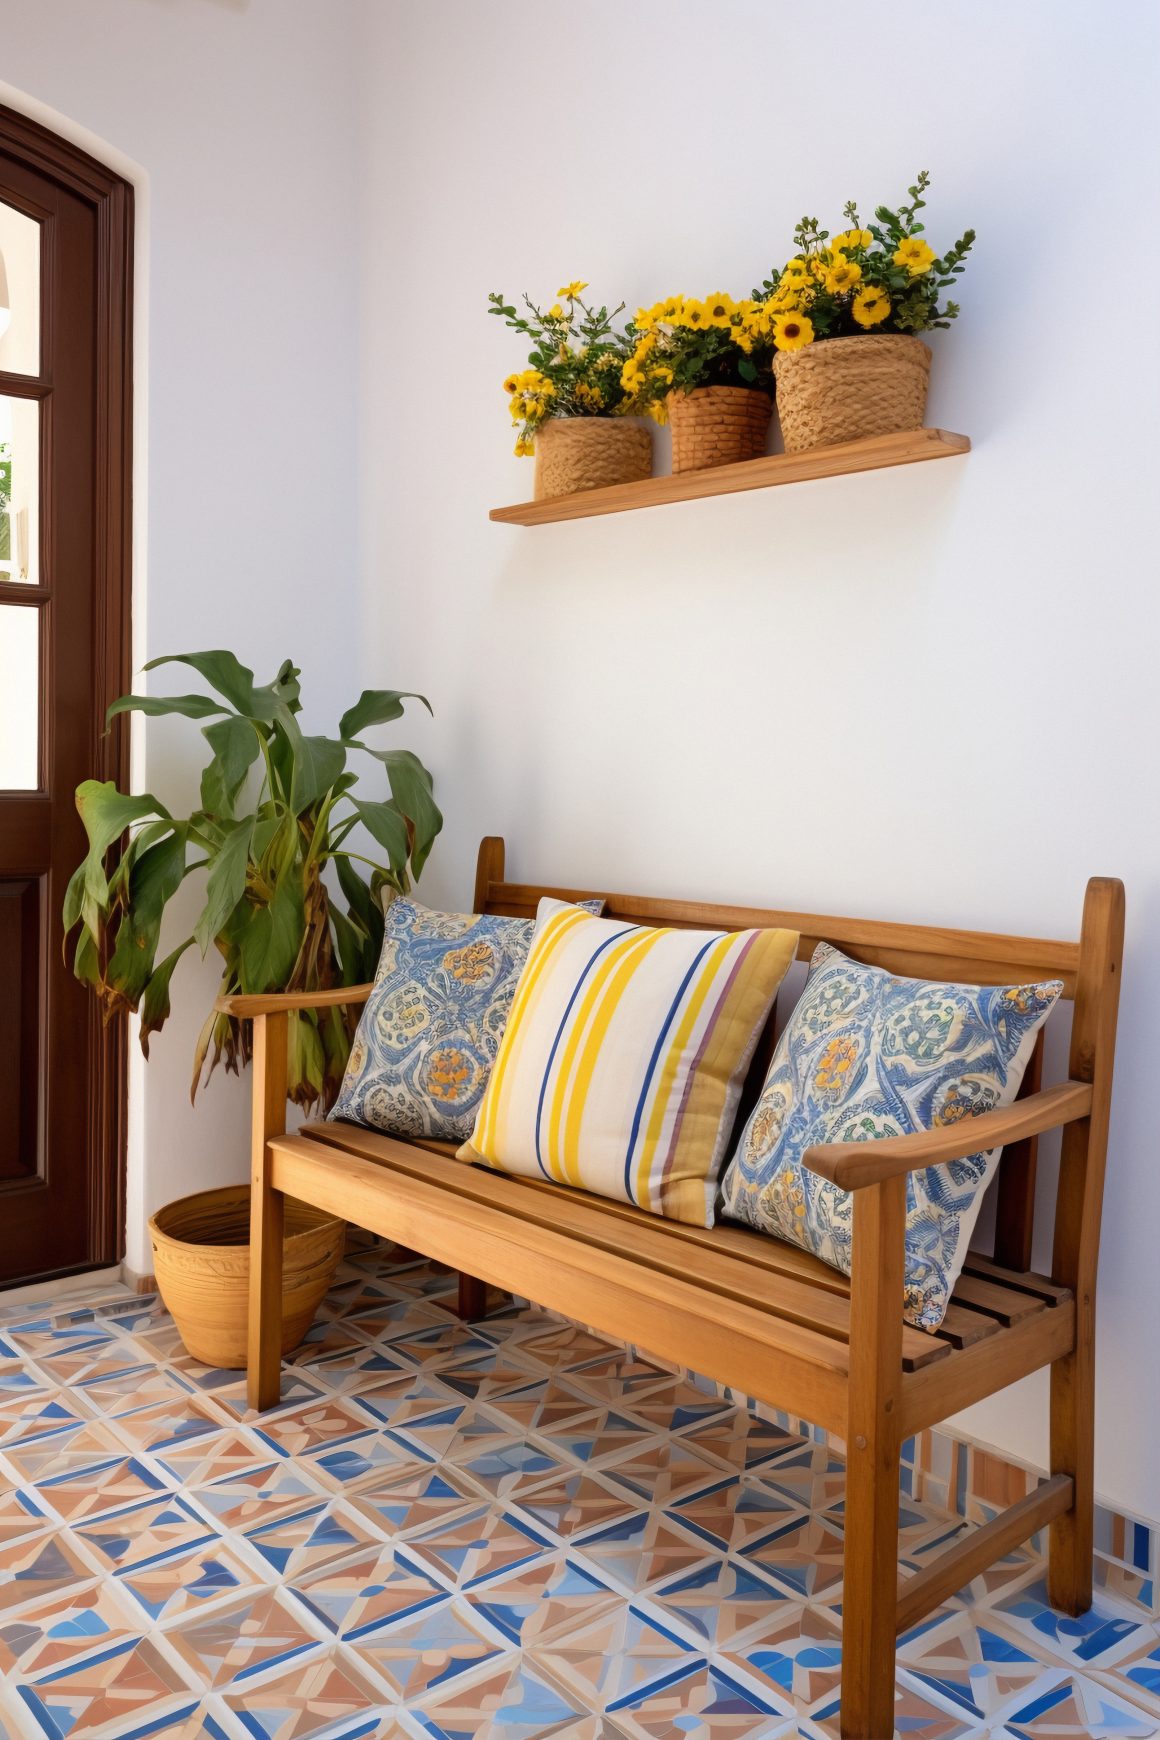 La véranda dévoile un banc en bois avec des coussins bleus et jaunes, entouré de plantes vertes